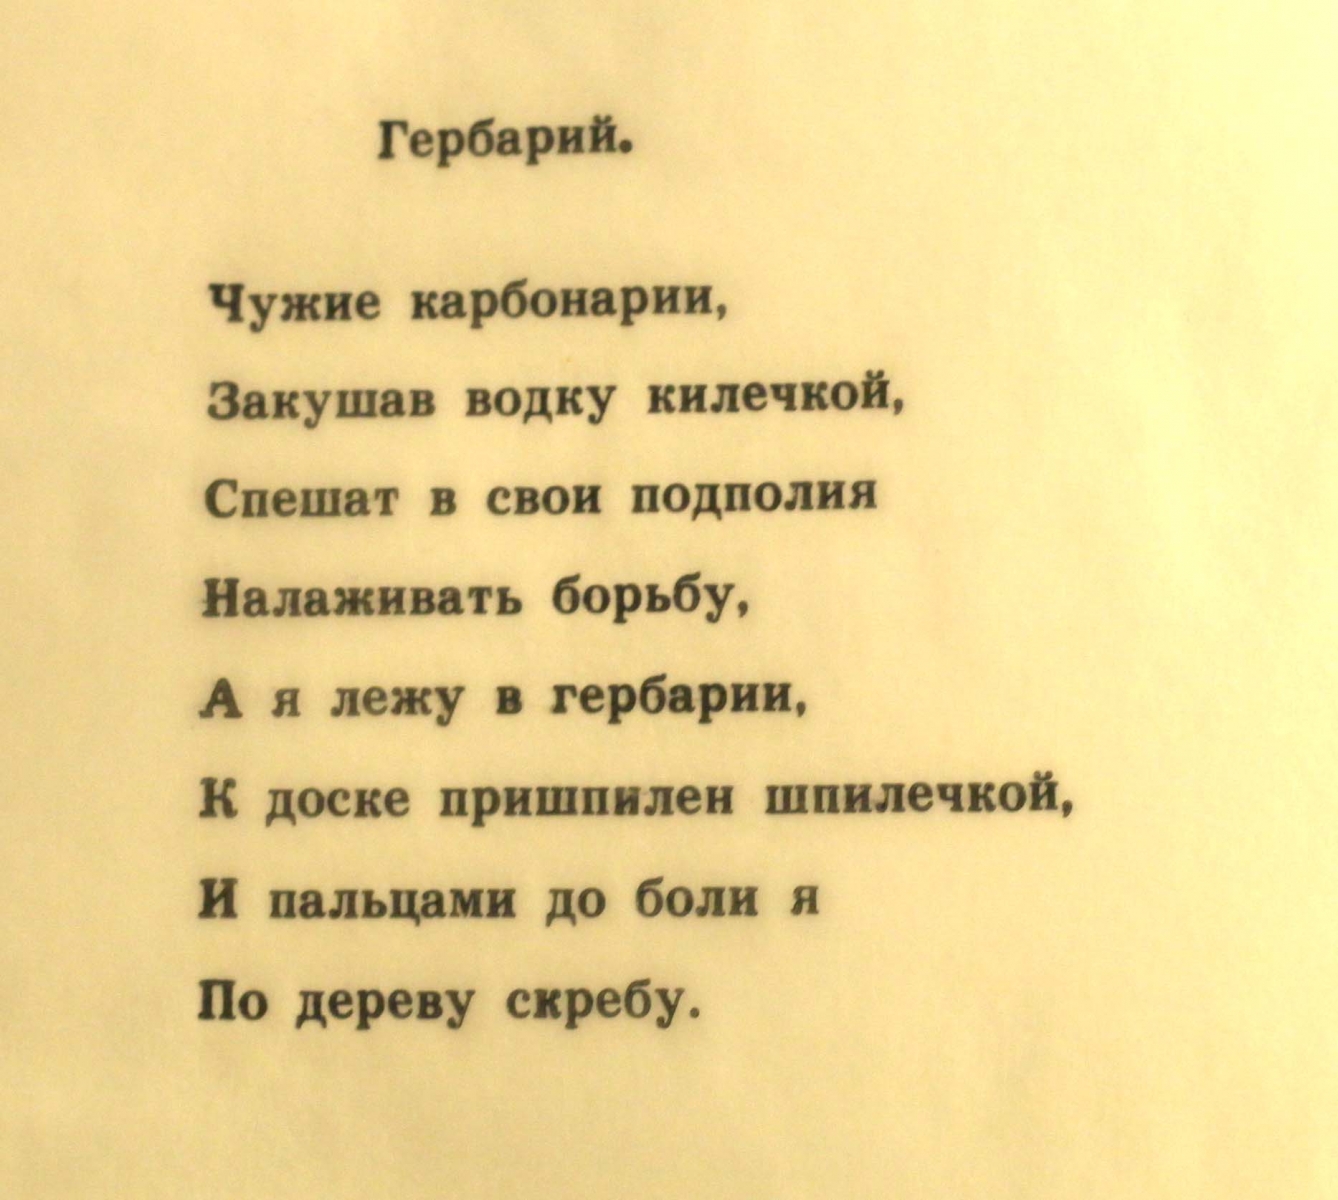 Фрагмент песни Владимира Высоцкого "Гербарий"